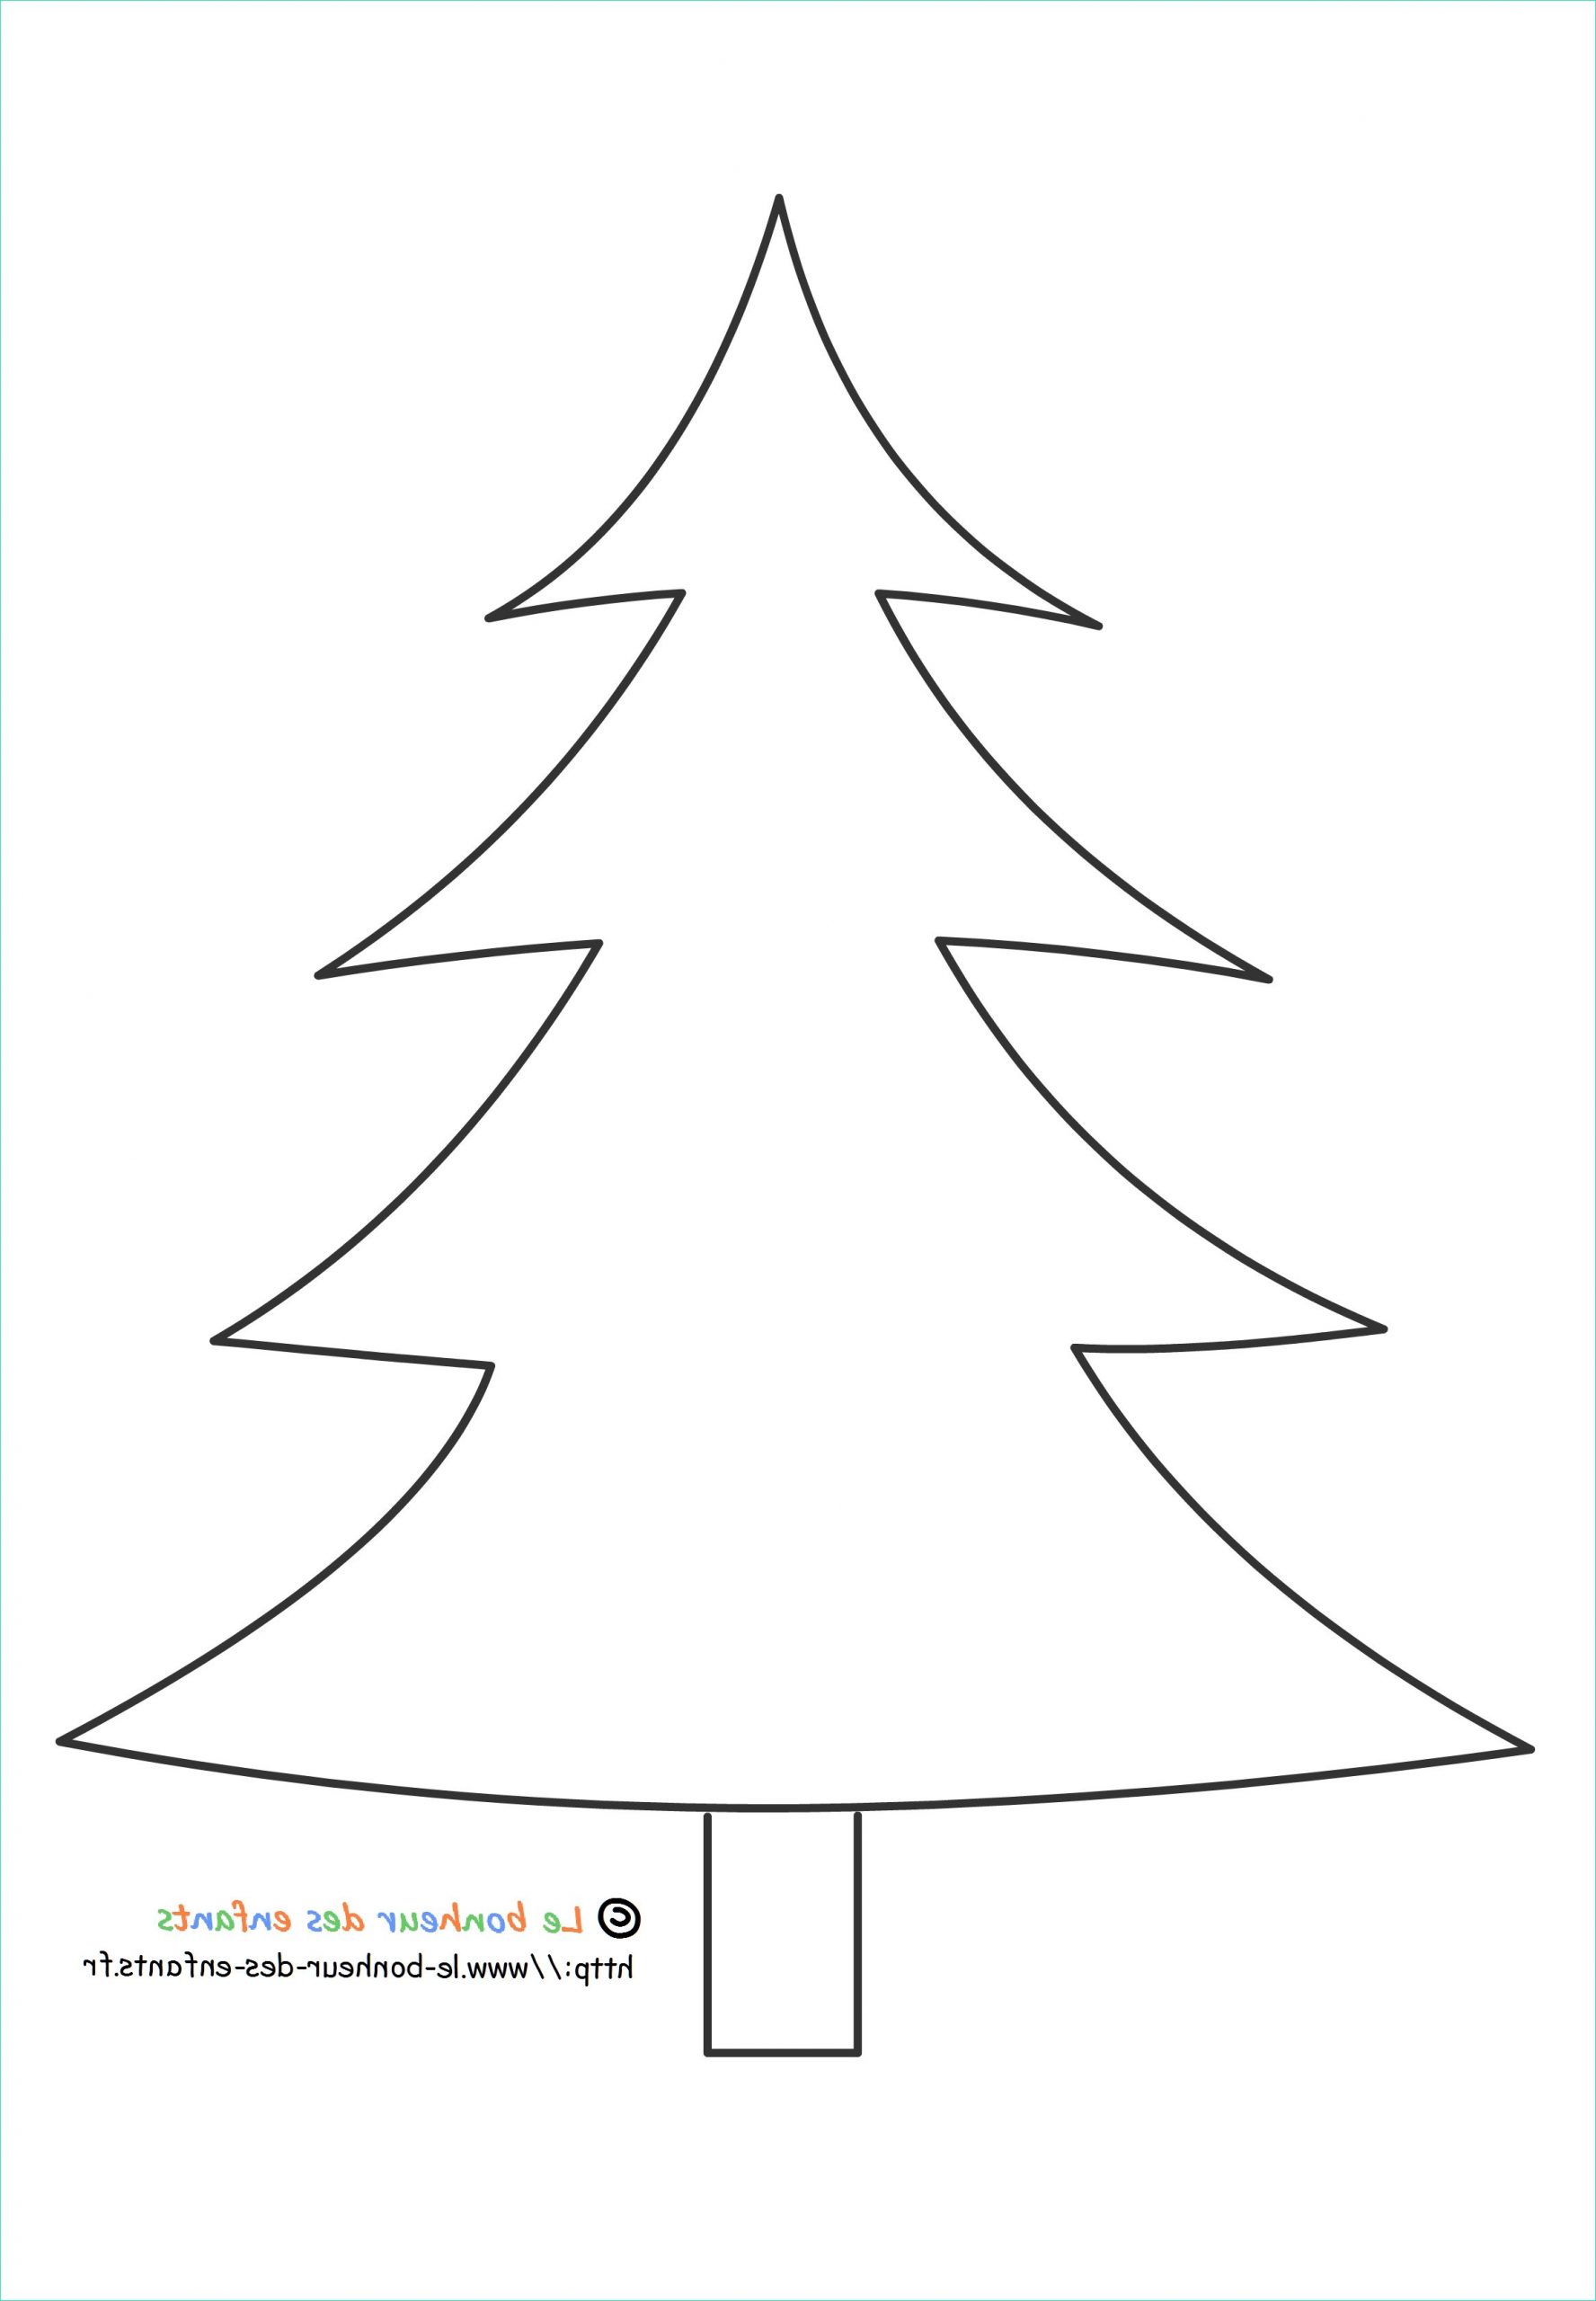 Image Sapin De Noel A Imprimer Nouveau Photos Search Results for “dessin De Sapin De Noel” – Calendar 2015